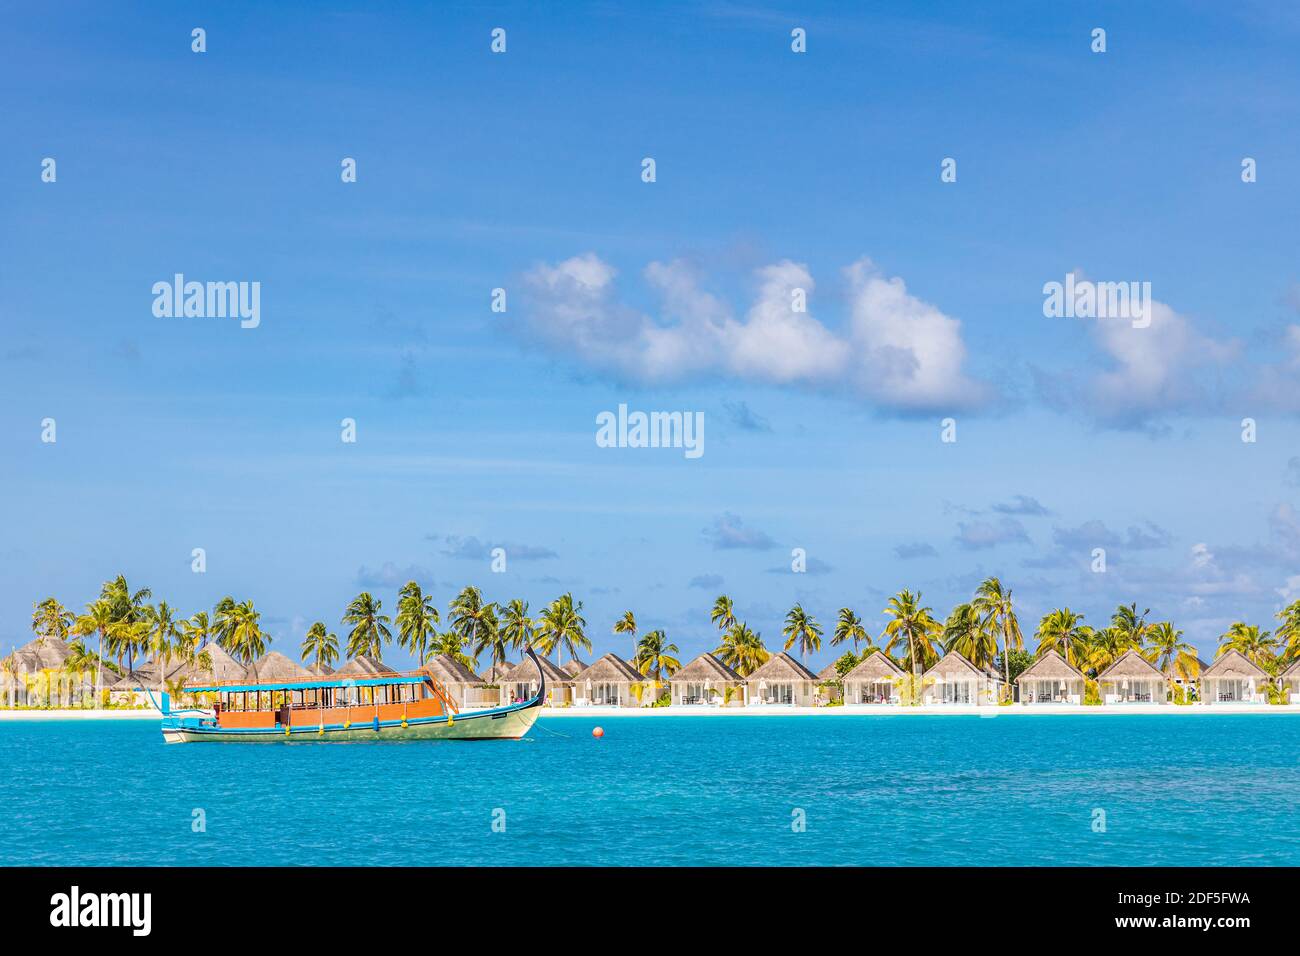 Perfektes tropisches Inselparadies Strand Malediven. Lange Anlegestelle und ein traditionelles Boot Dhoni. Sommer Reise Tourismus Landschaft, blaue Meer Lagune Strand Villa Stockfoto